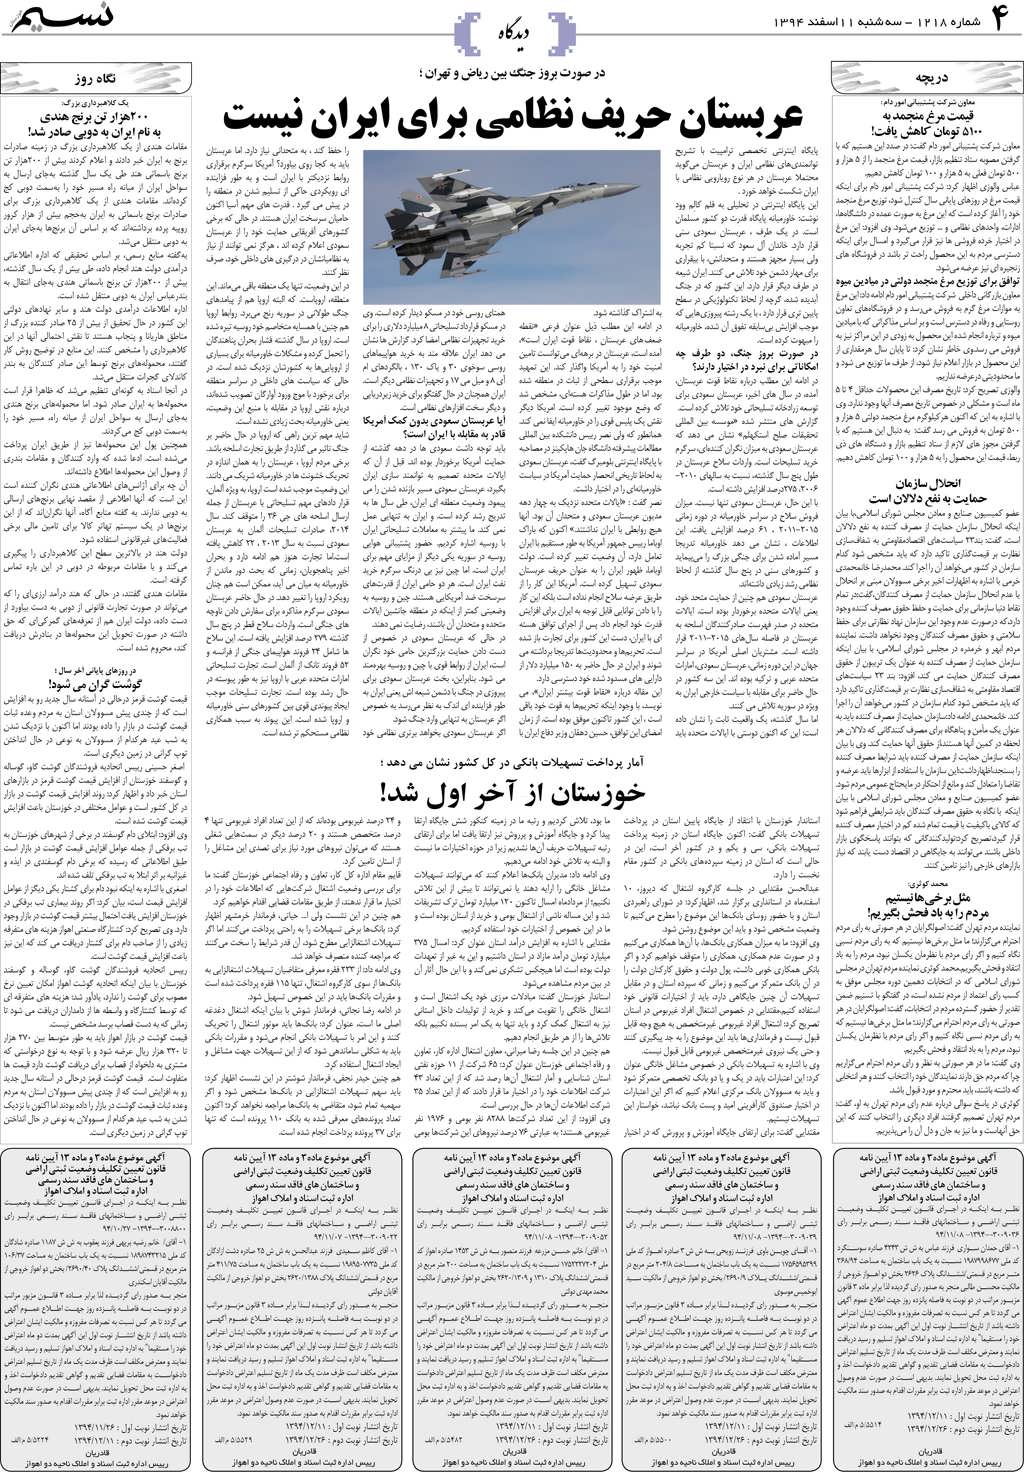 صفحه دیدگاه روزنامه نسیم شماره 1218